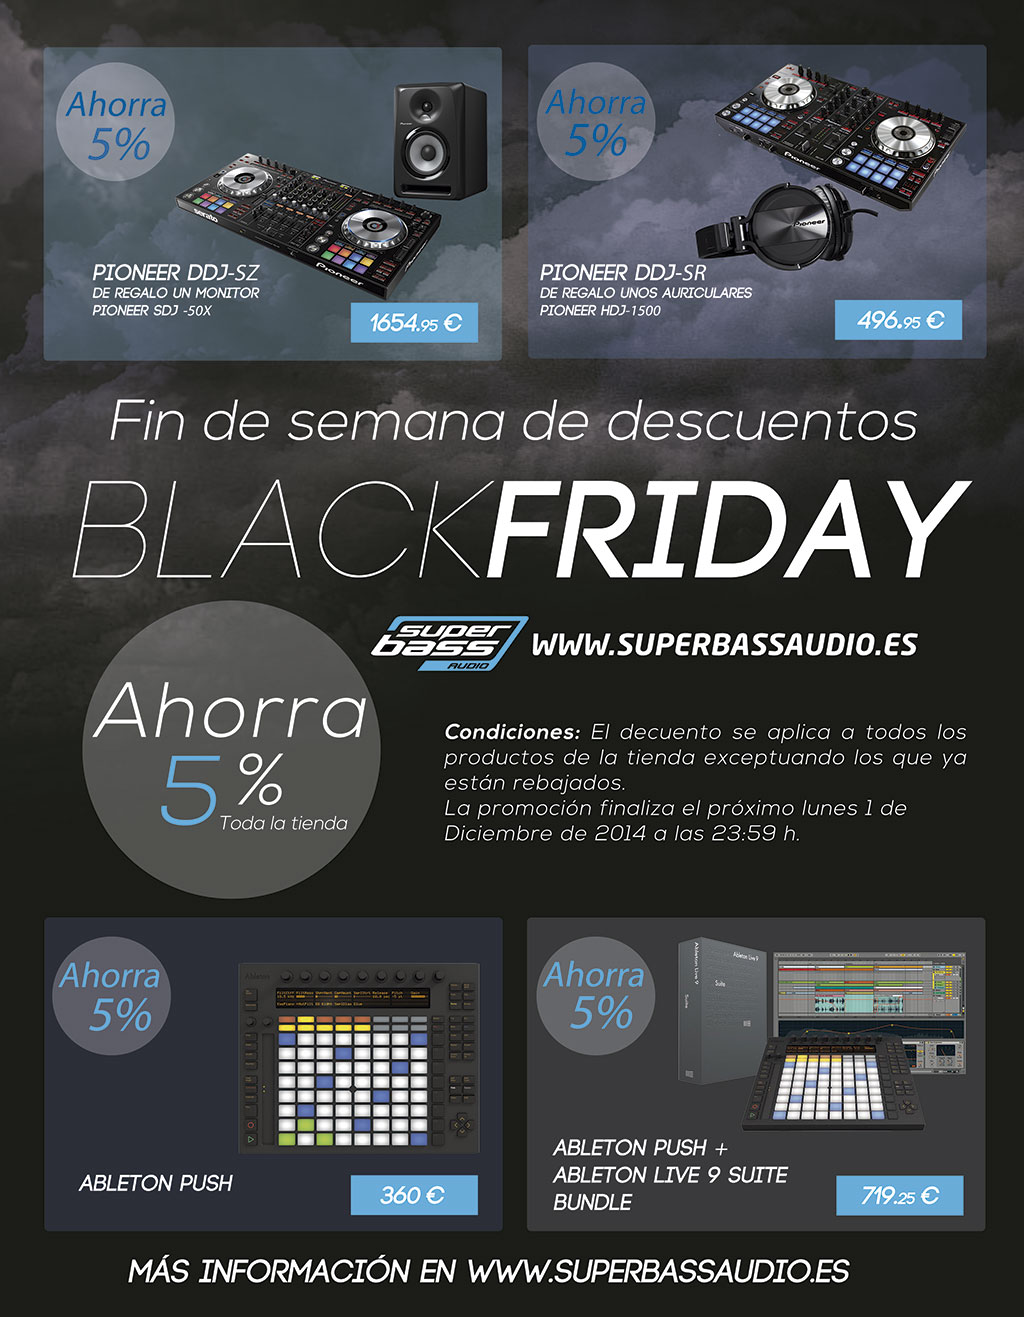 Ofertas Black Friday en Superbassaudio.es 2014